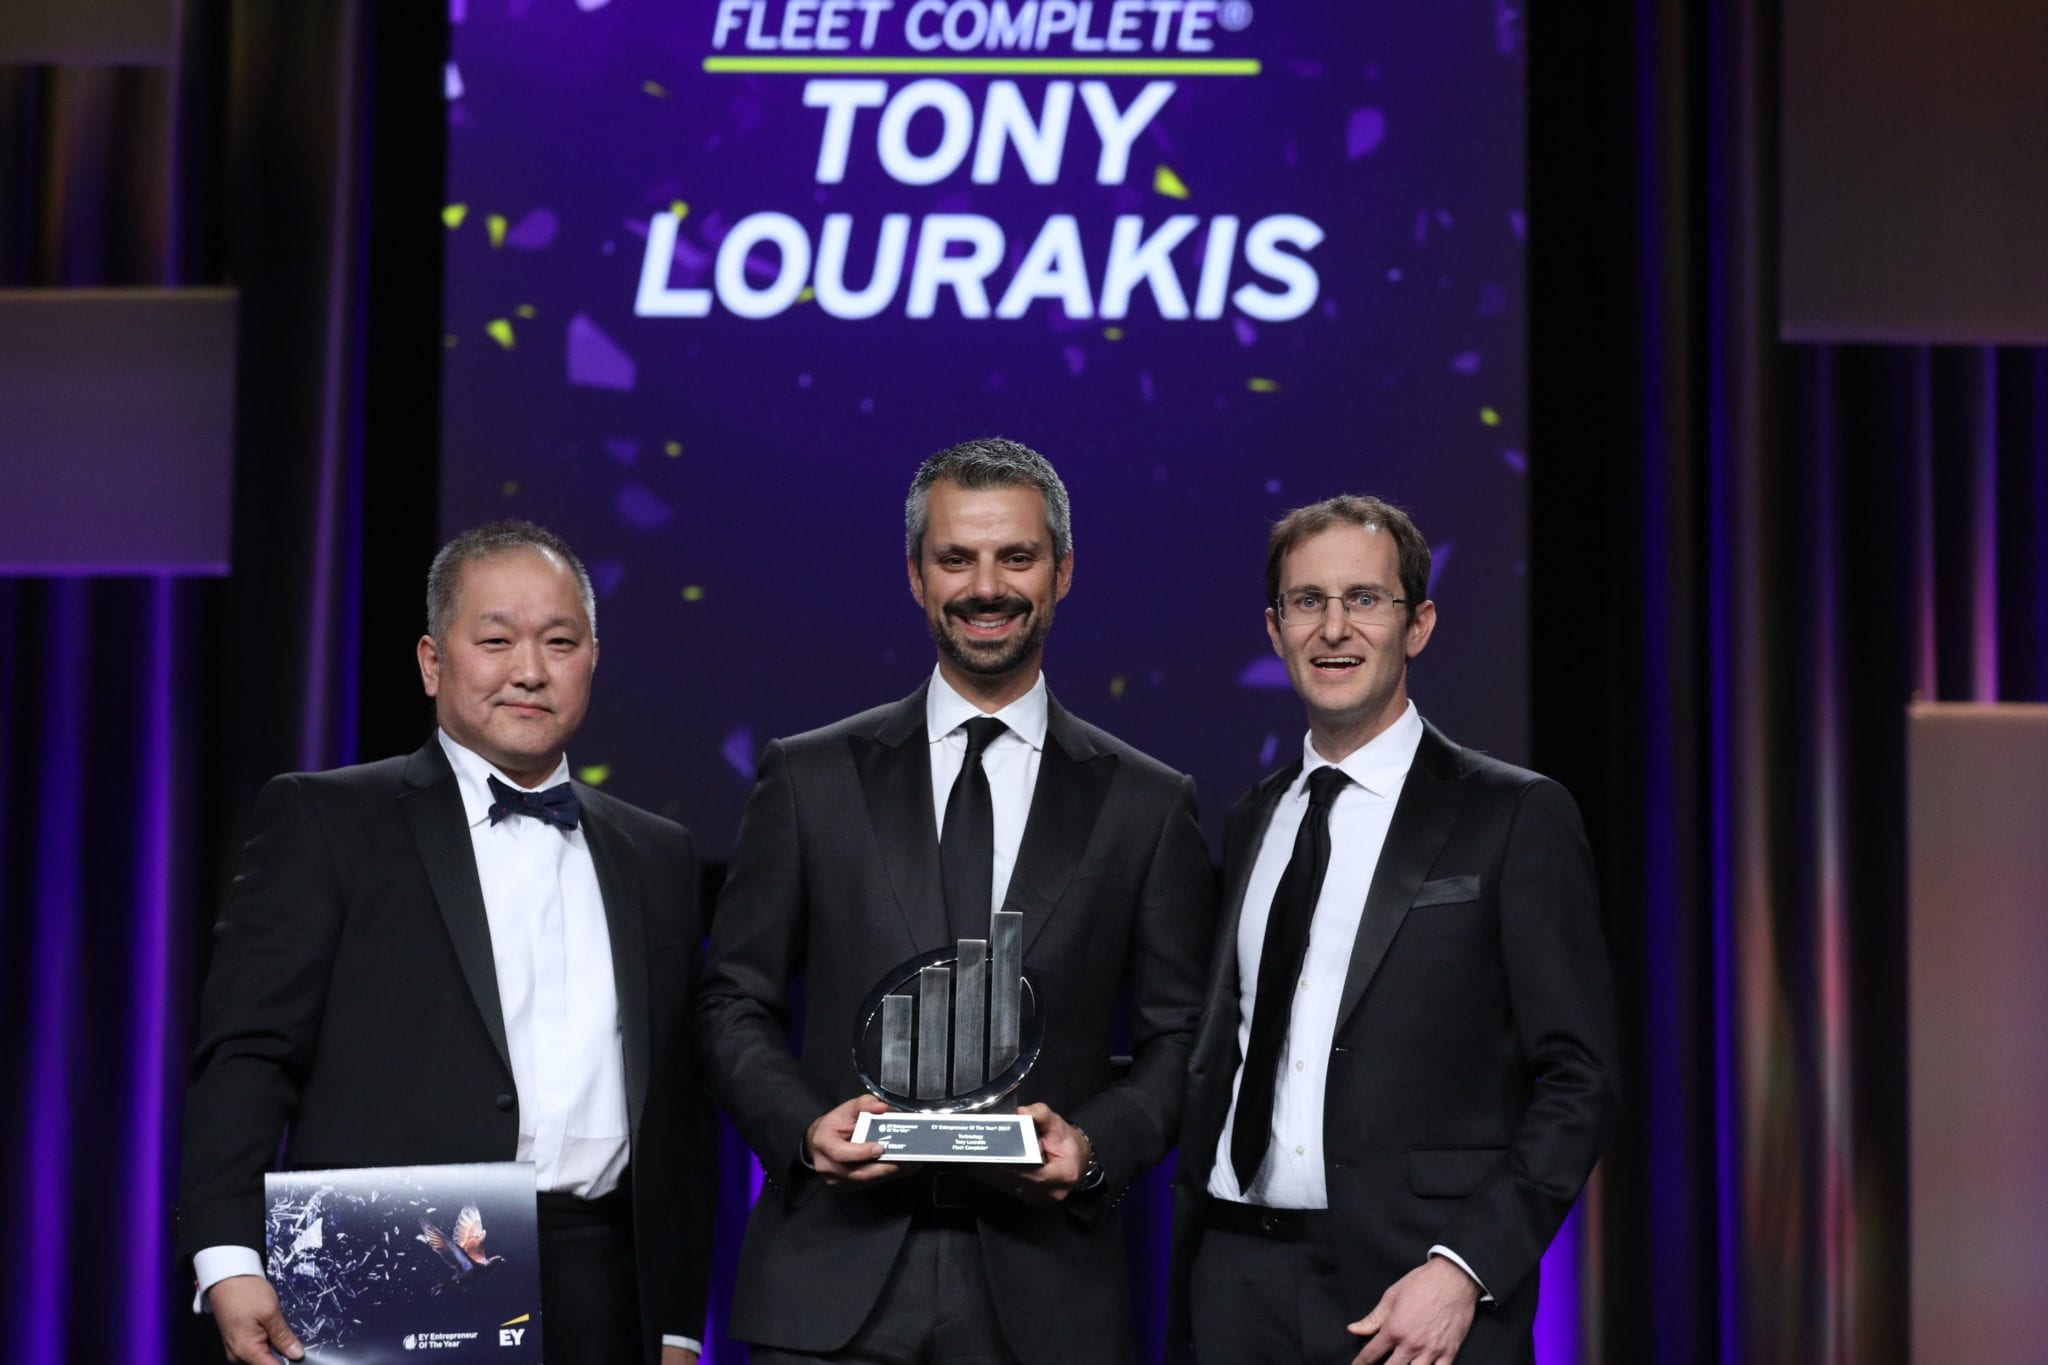 Tony Lourakis receiving EY award